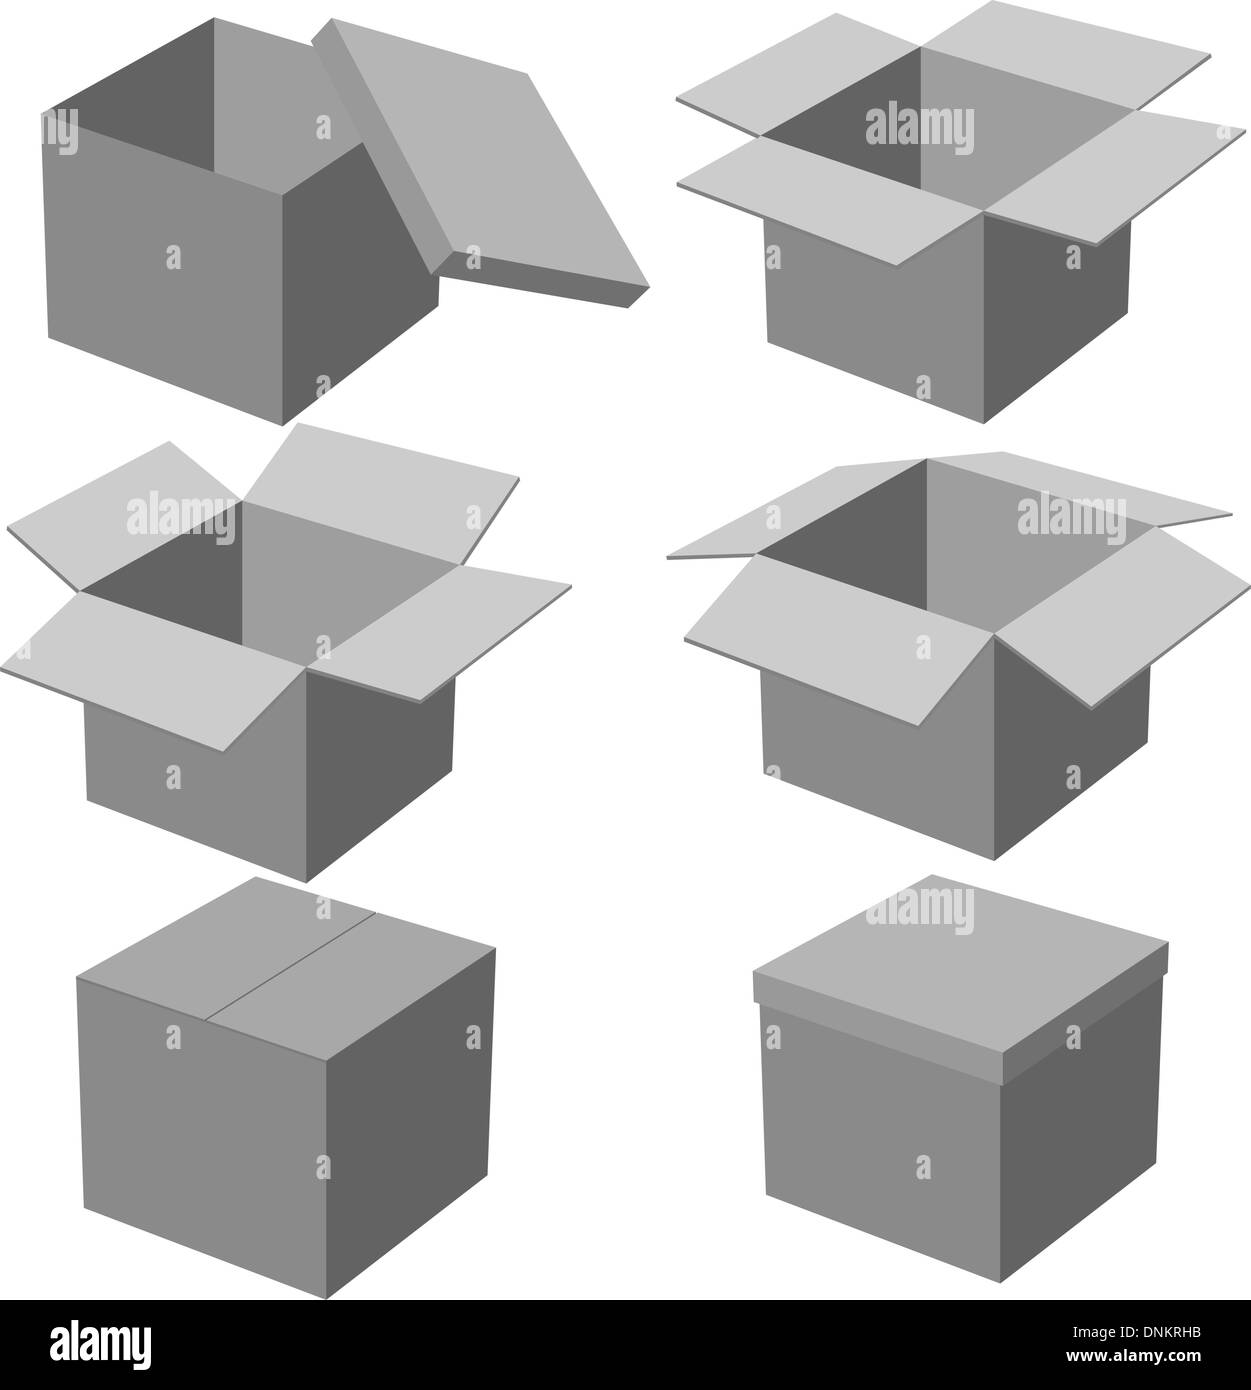  Caja de cartón cuadrada profunda con tapa, 10 x 10 pulgadas,  caja de regalo blanca profunda, 2 paquetes de 4 (8 en total) : Salud y Hogar